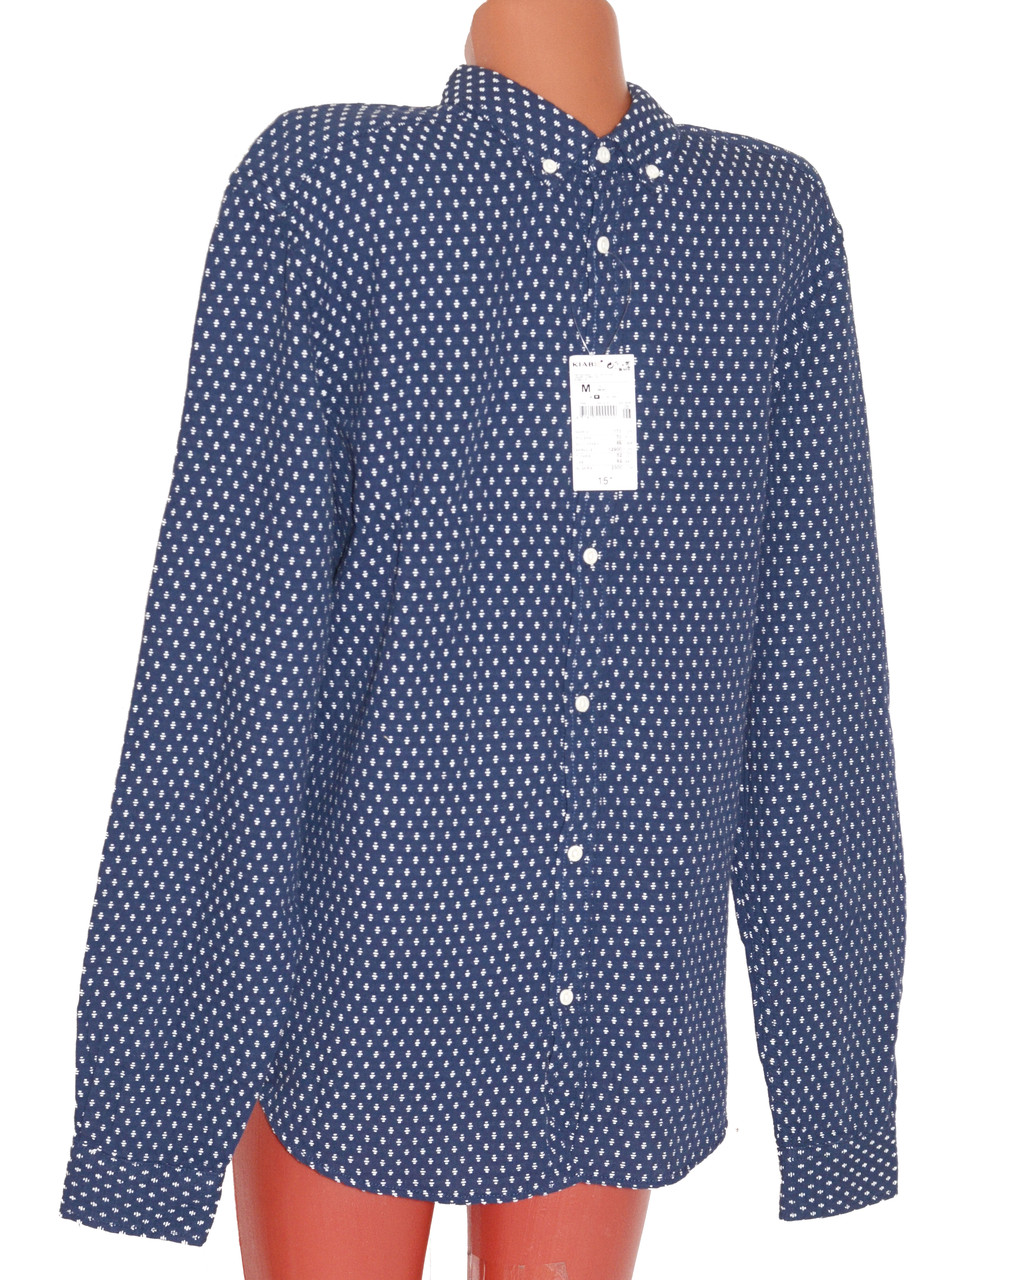 Рубашка KIABI плотная классная на размер М EUR 39-40